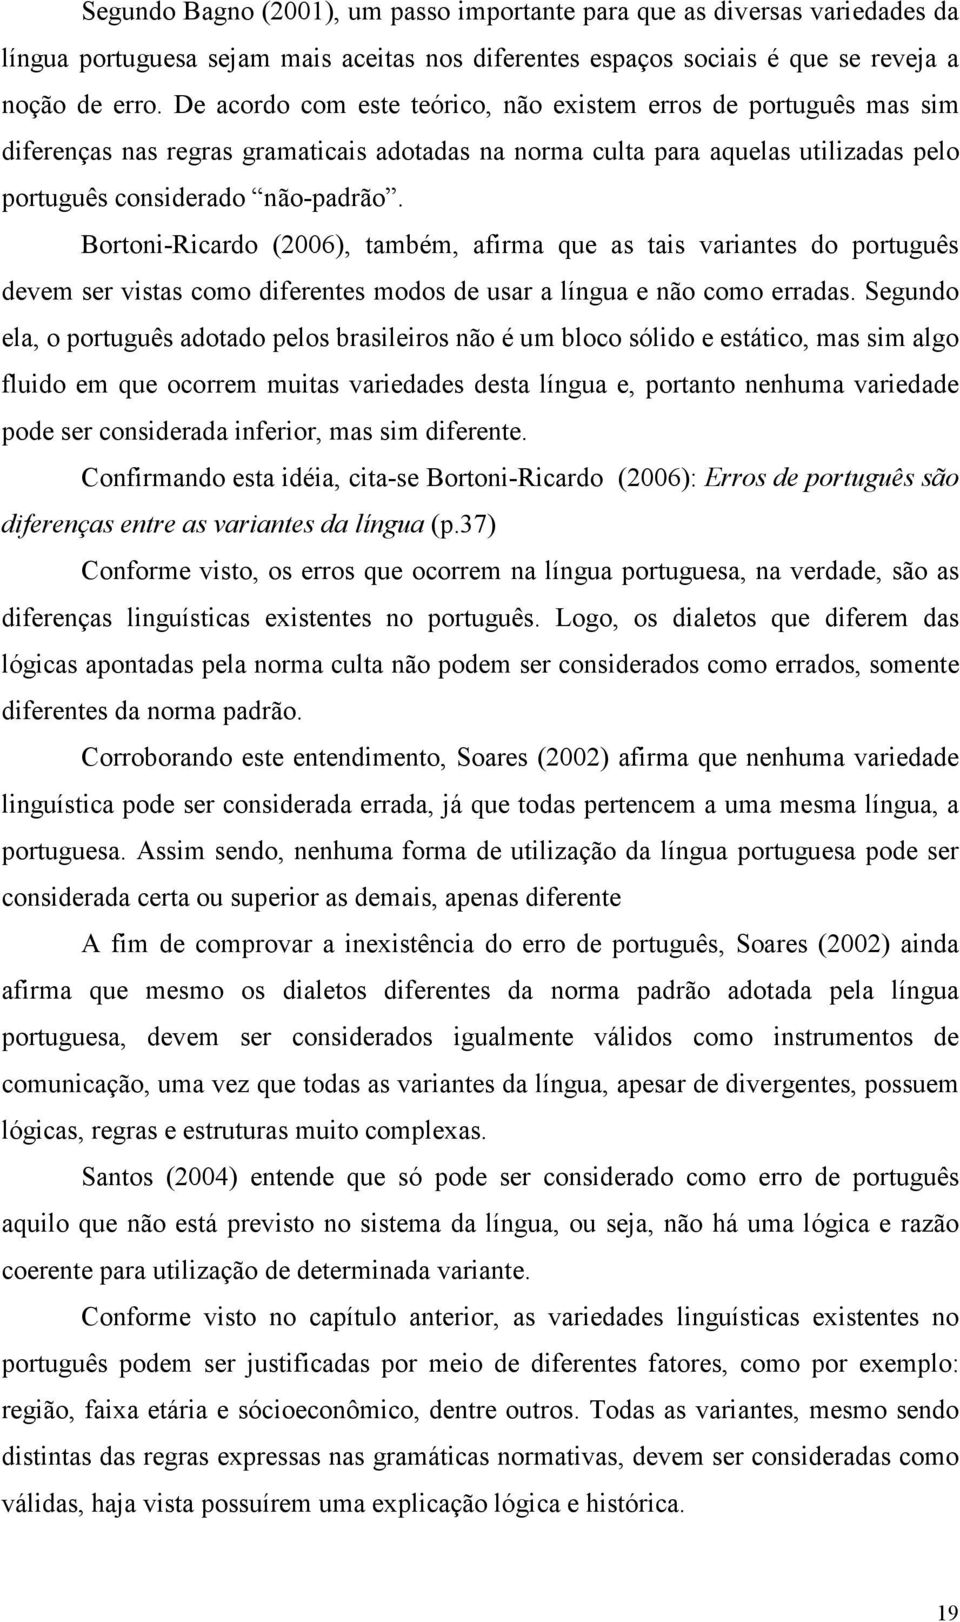 Bortoni-Ricardo (2006), também, afirma que as tais variantes do português devem ser vistas como diferentes modos de usar a língua e não como erradas.